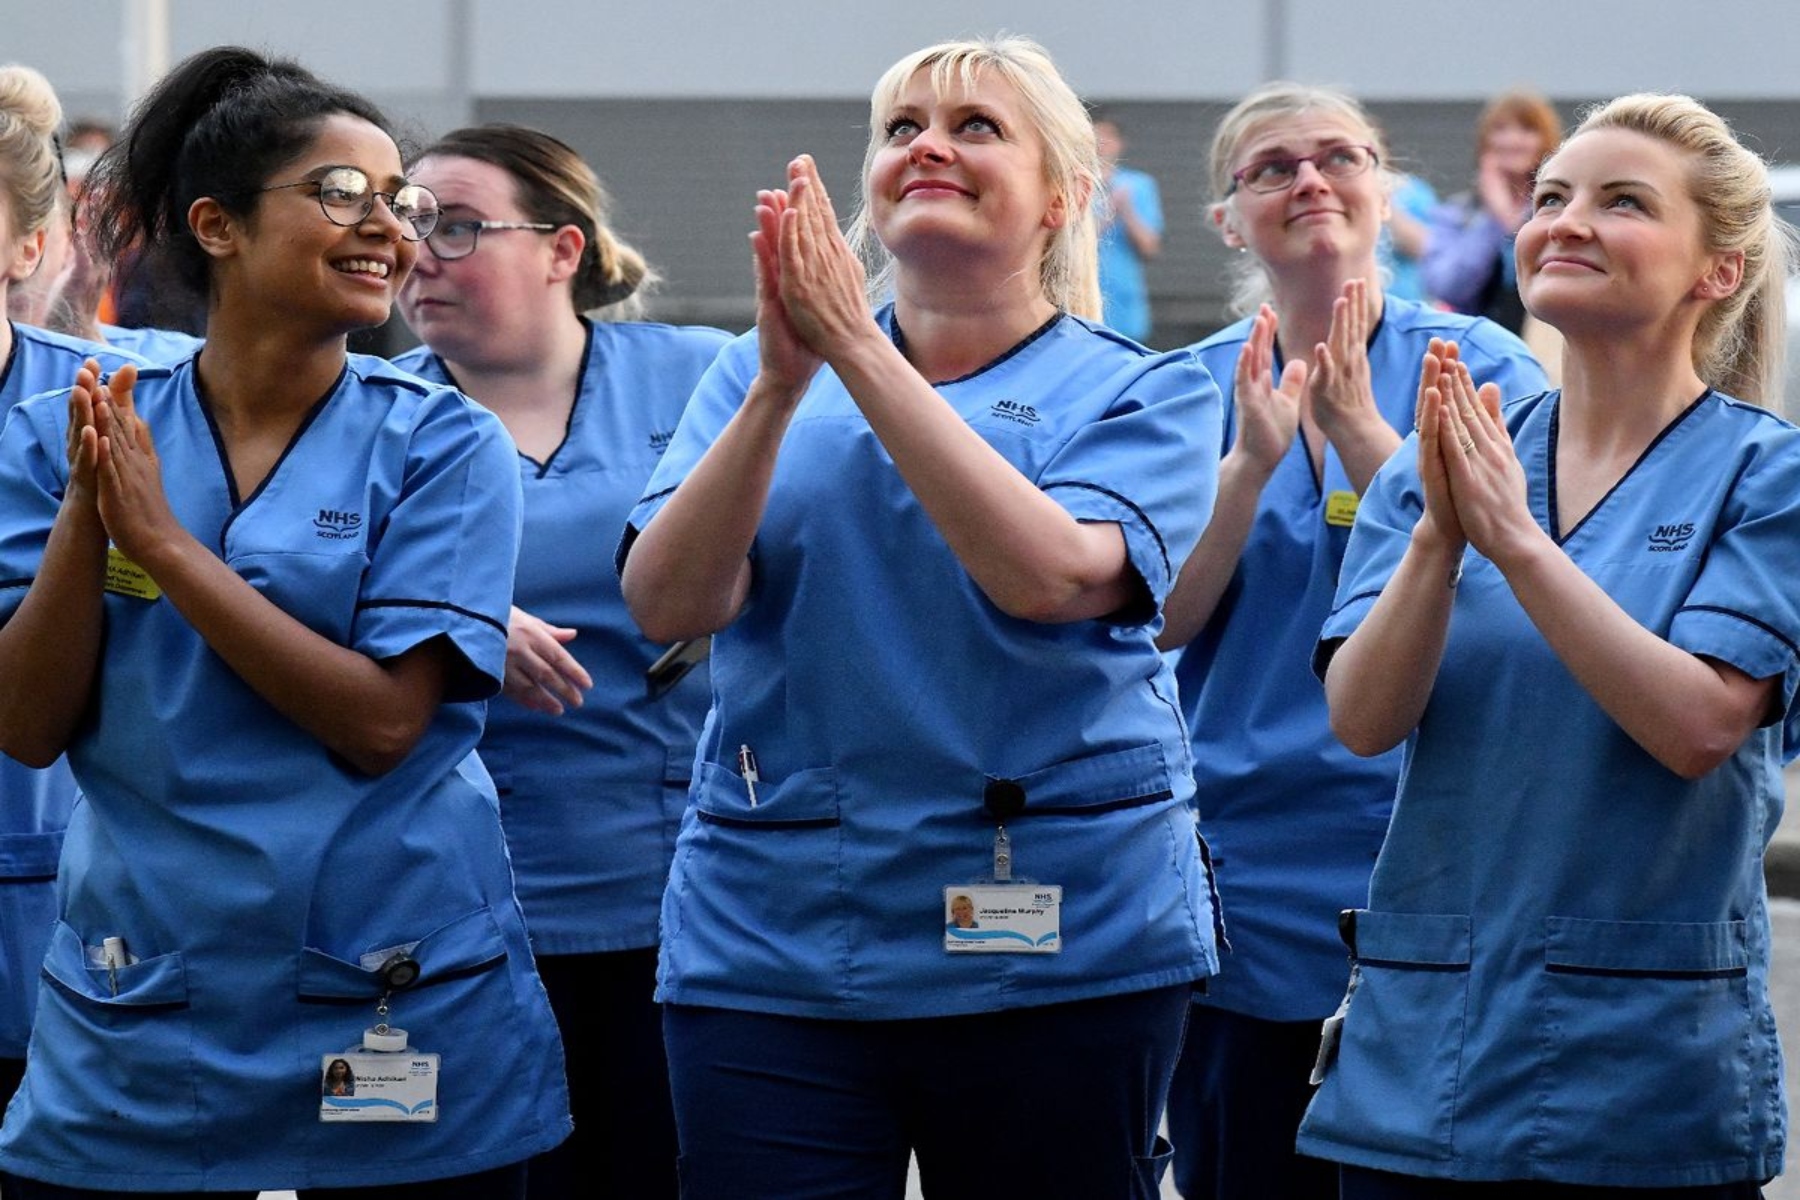 Ψυχική υγεία νοσηλευτές: 3 στους 5 νοσηλευτές στη Σκωτία σκέφτονται να παραιτηθούν